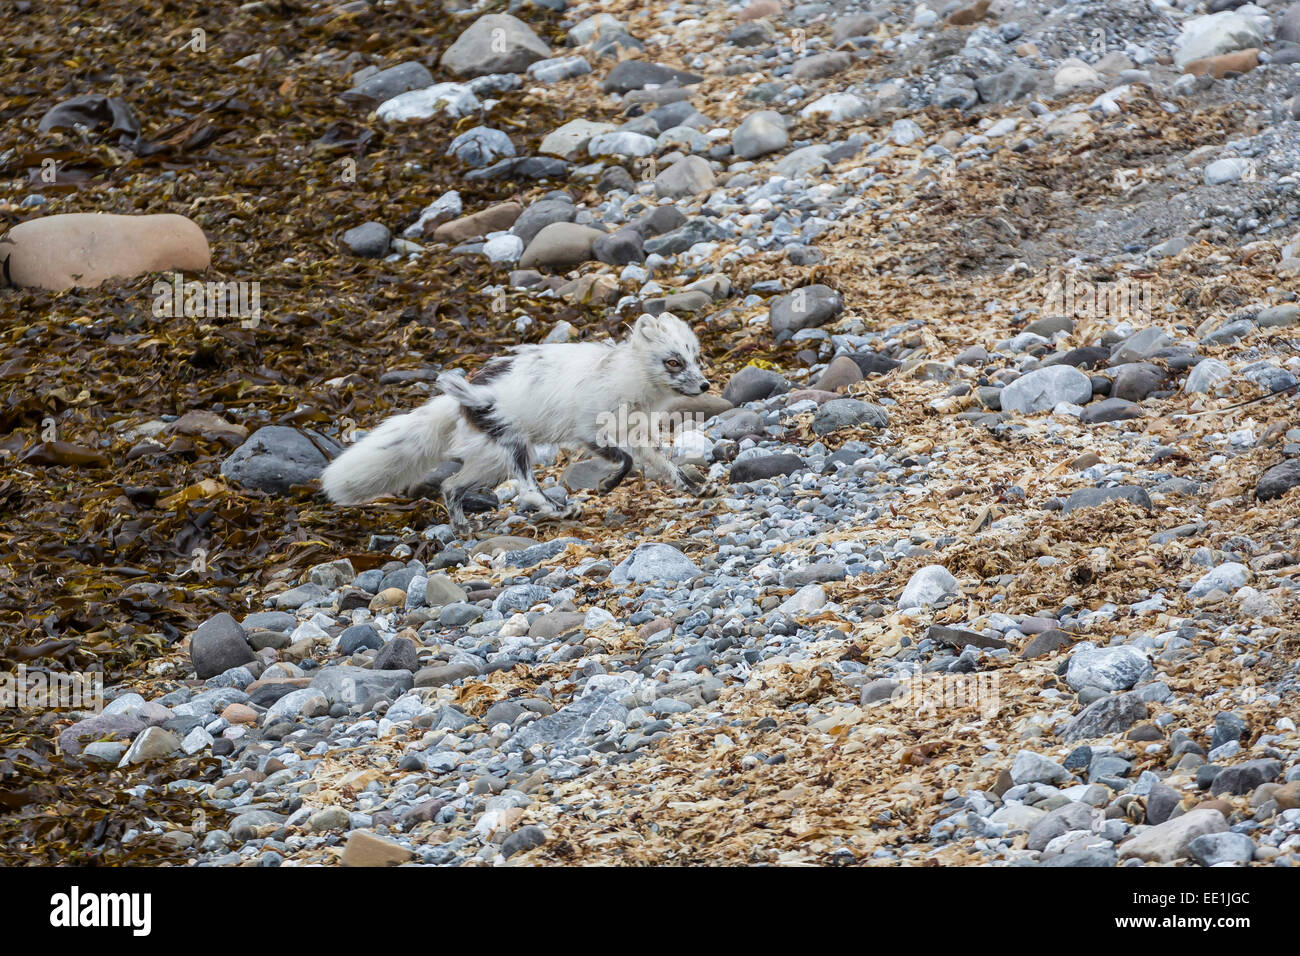 Adulto zorro ártico (Vulpes lagopus) perdiendo su abrigo de invierno para el verano, abrigo, Gnalodden Hornsund, Spitsbergen, Svalbard, Noruega Foto de stock